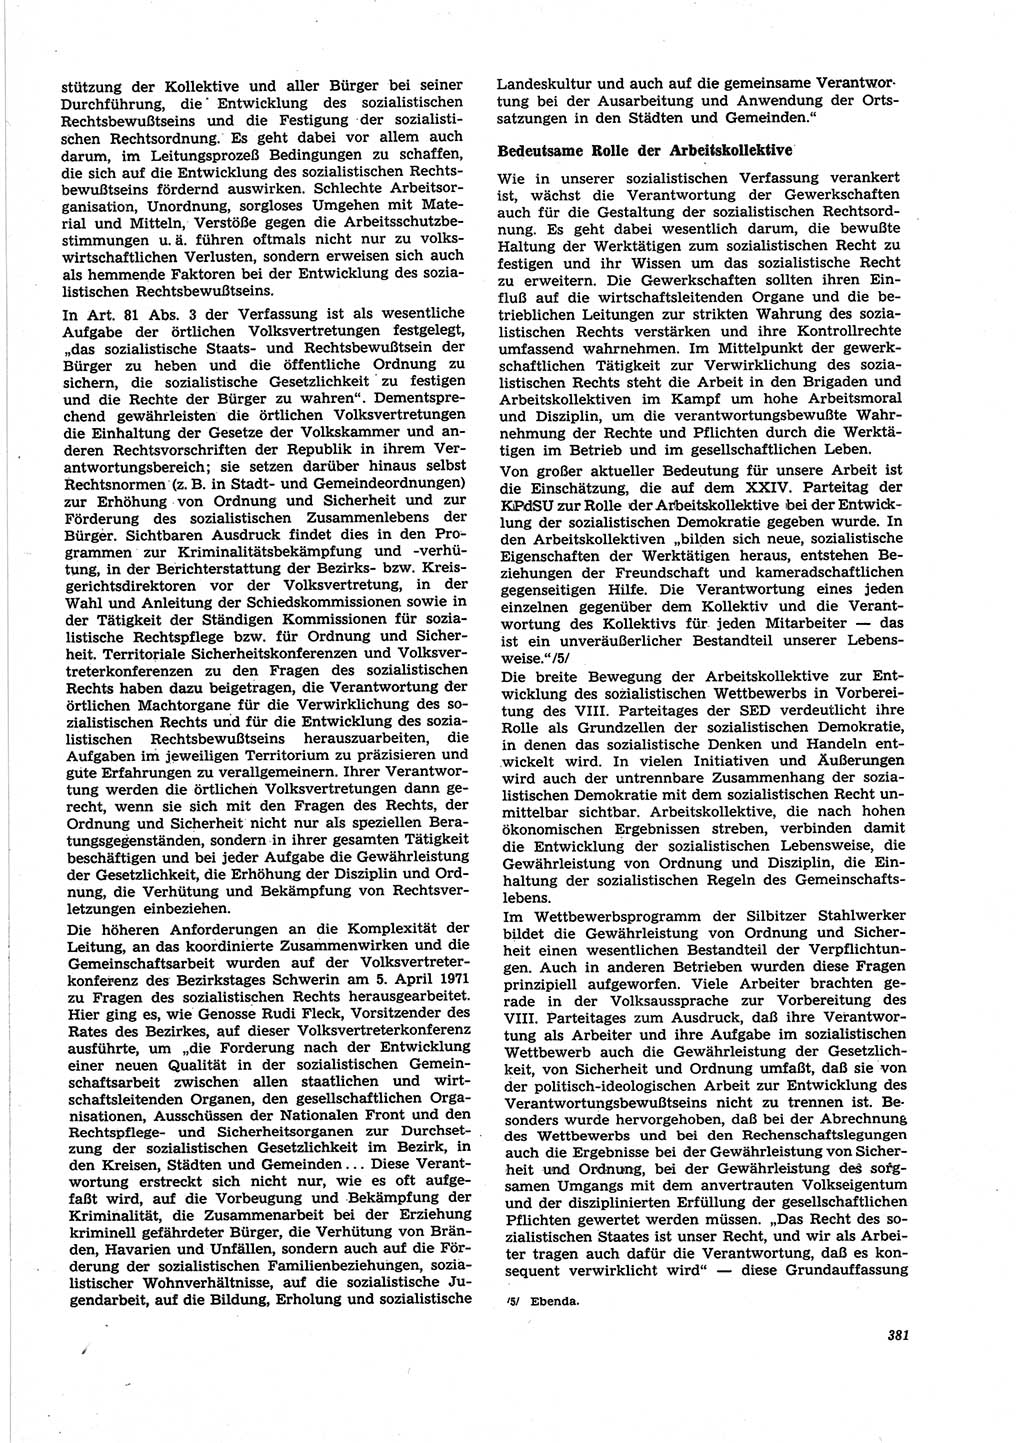 Neue Justiz (NJ), Zeitschrift für Recht und Rechtswissenschaft [Deutsche Demokratische Republik (DDR)], 25. Jahrgang 1971, Seite 381 (NJ DDR 1971, S. 381)